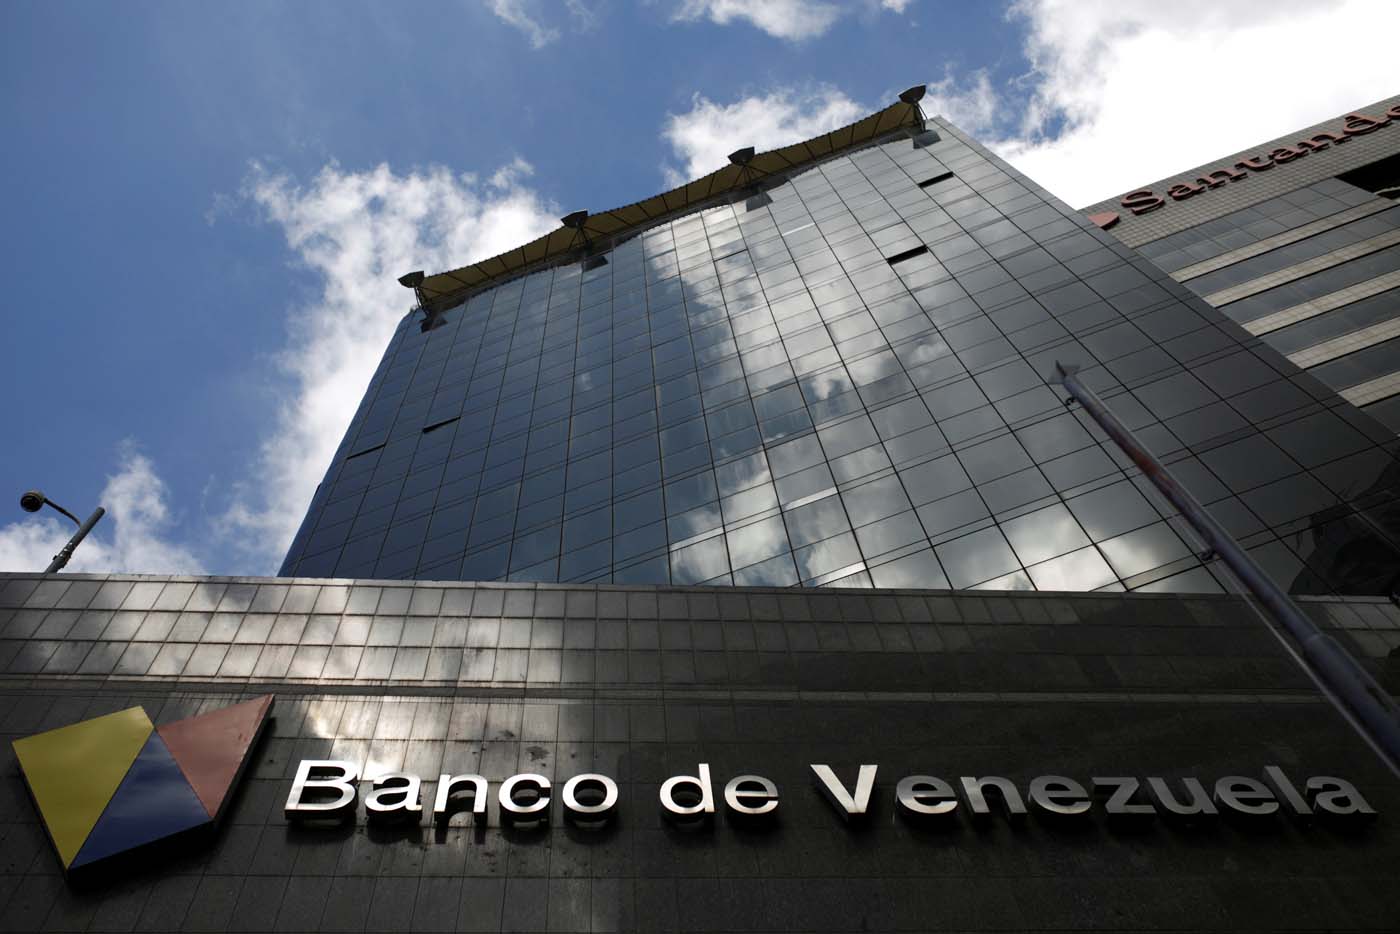 Como el país… el Banco de Venezuela también está caído #14Feb